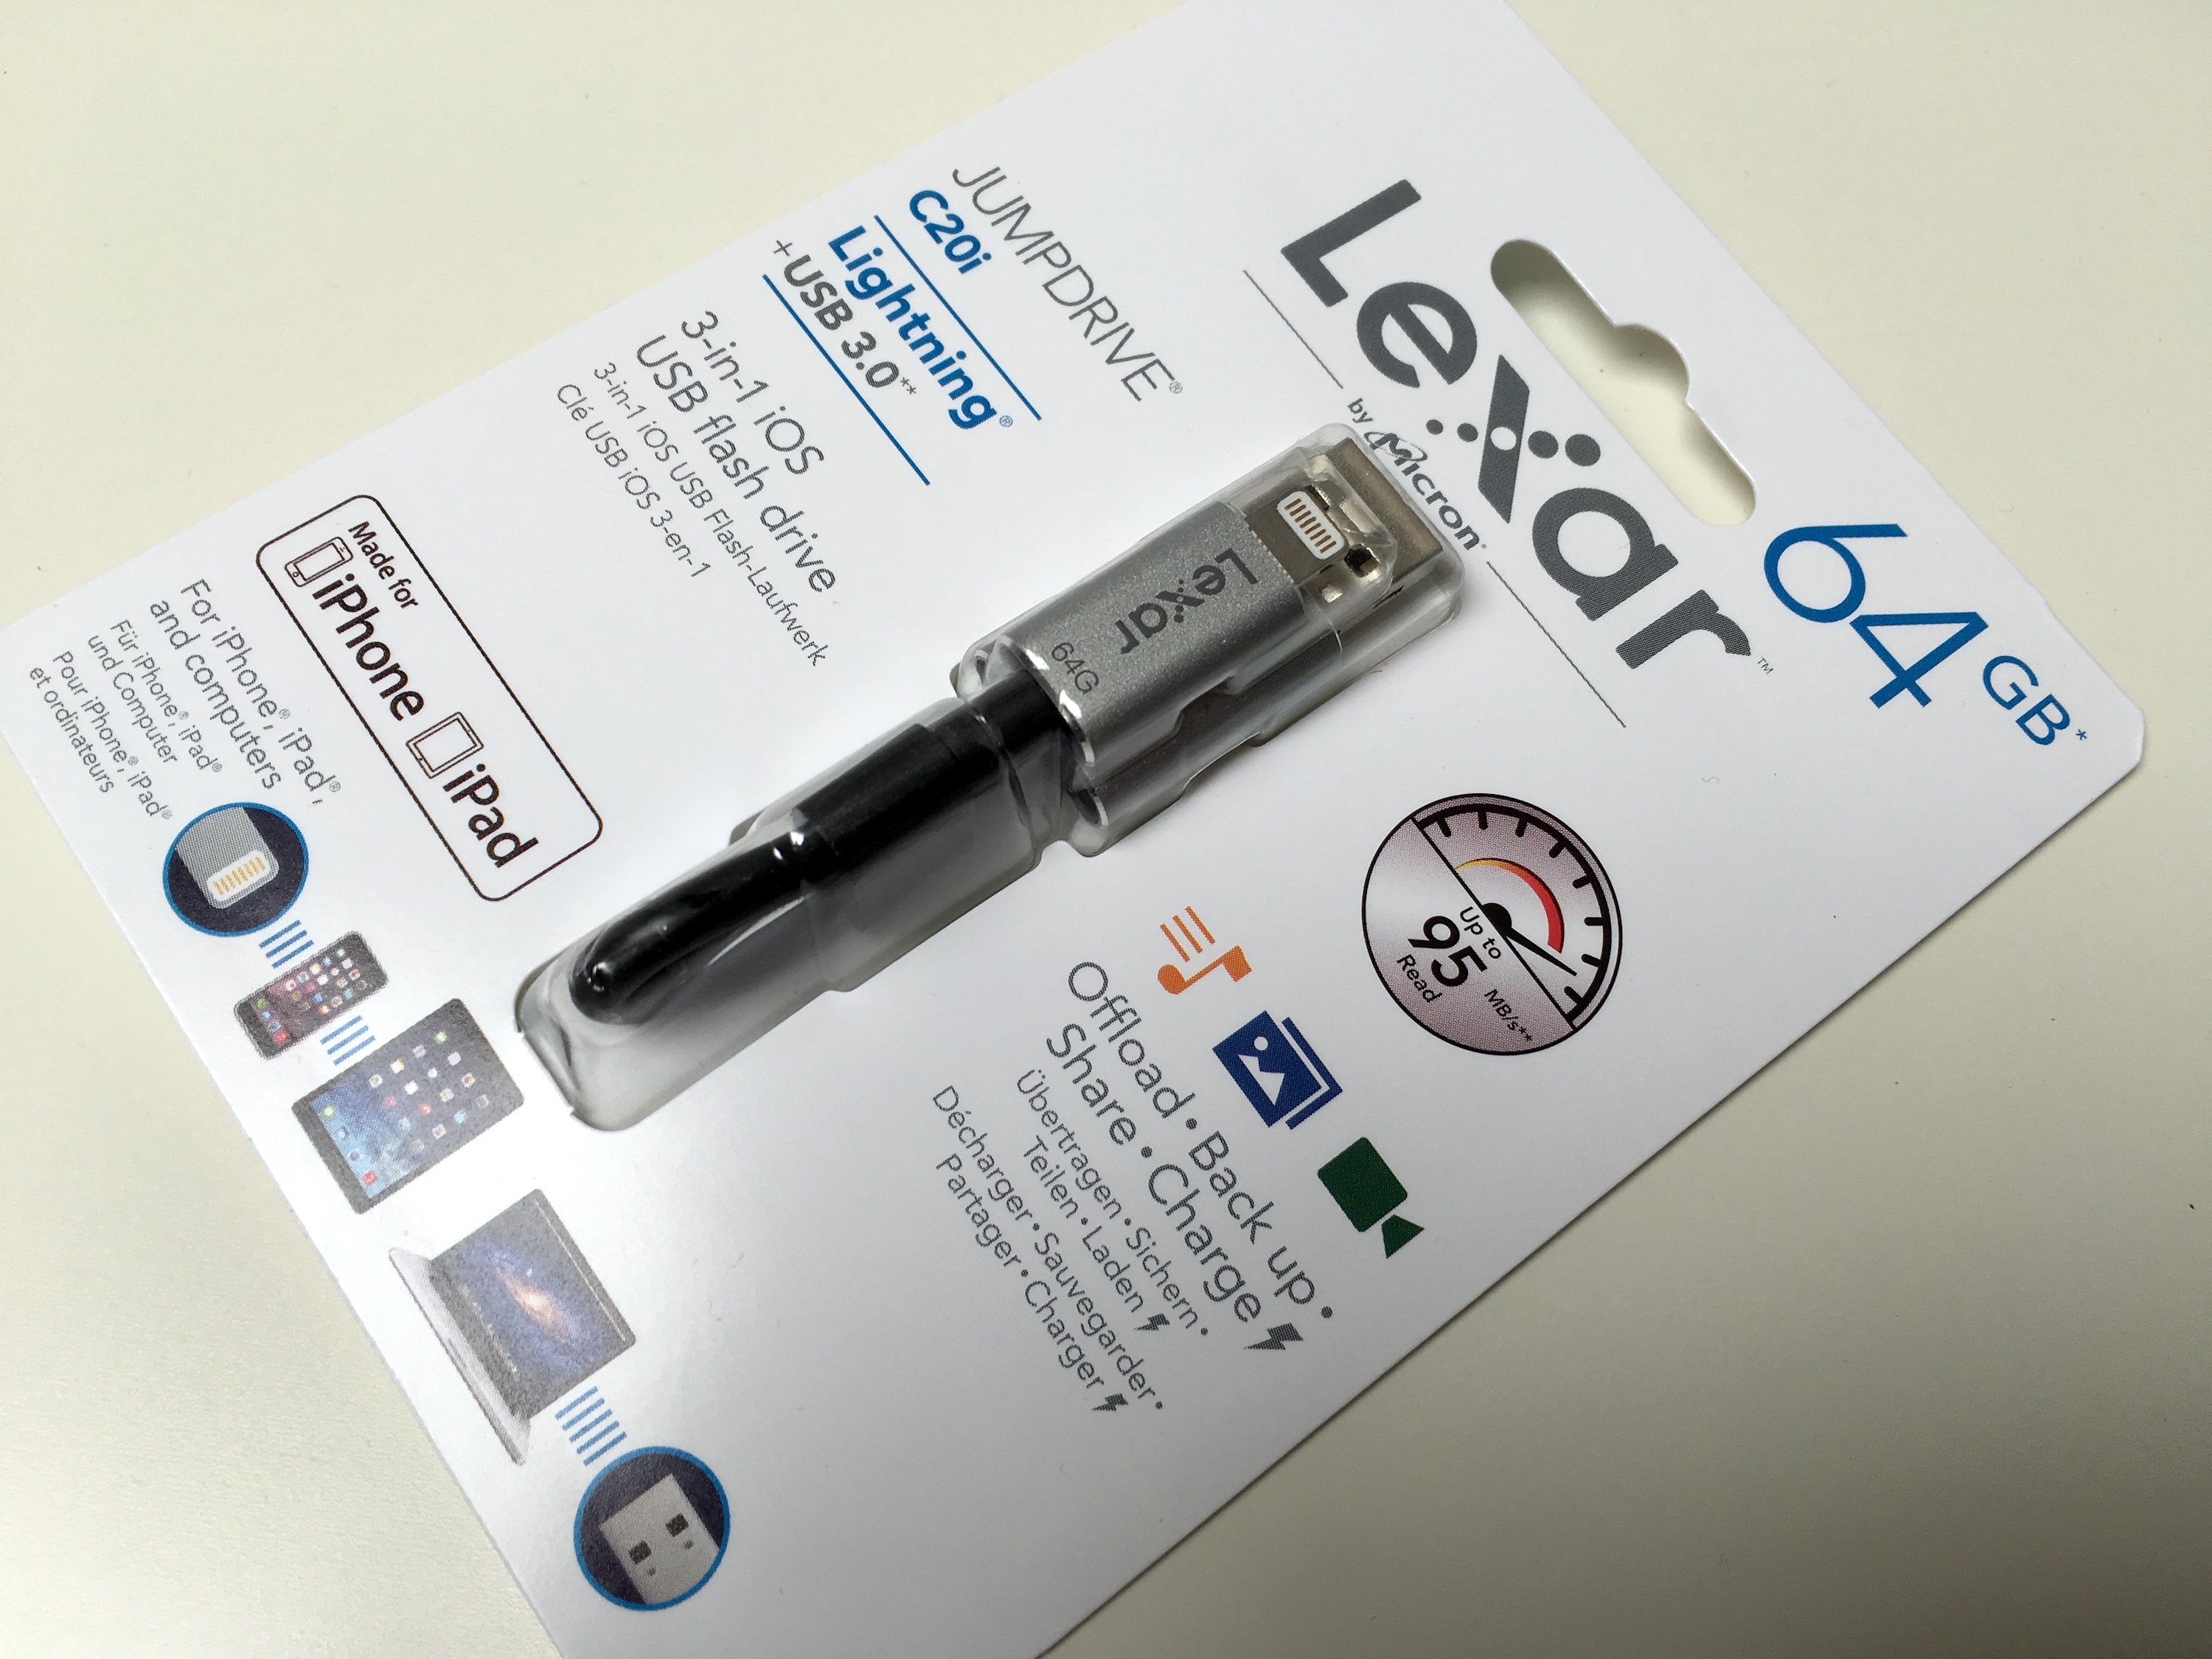 Test de la clé USB iPhone/iPad déguisée en câble de recharge